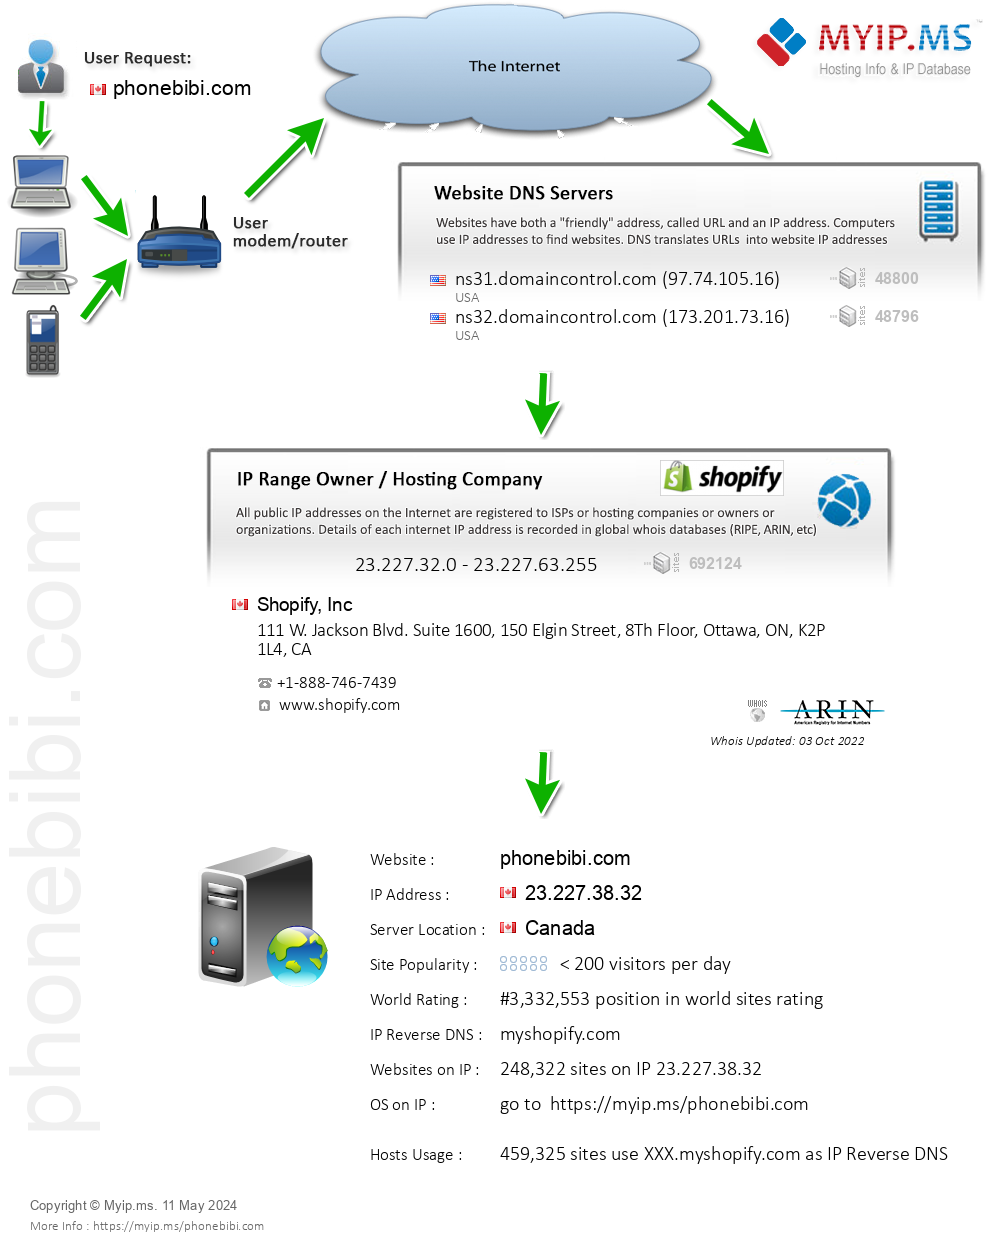 Phonebibi.com - Website Hosting Visual IP Diagram